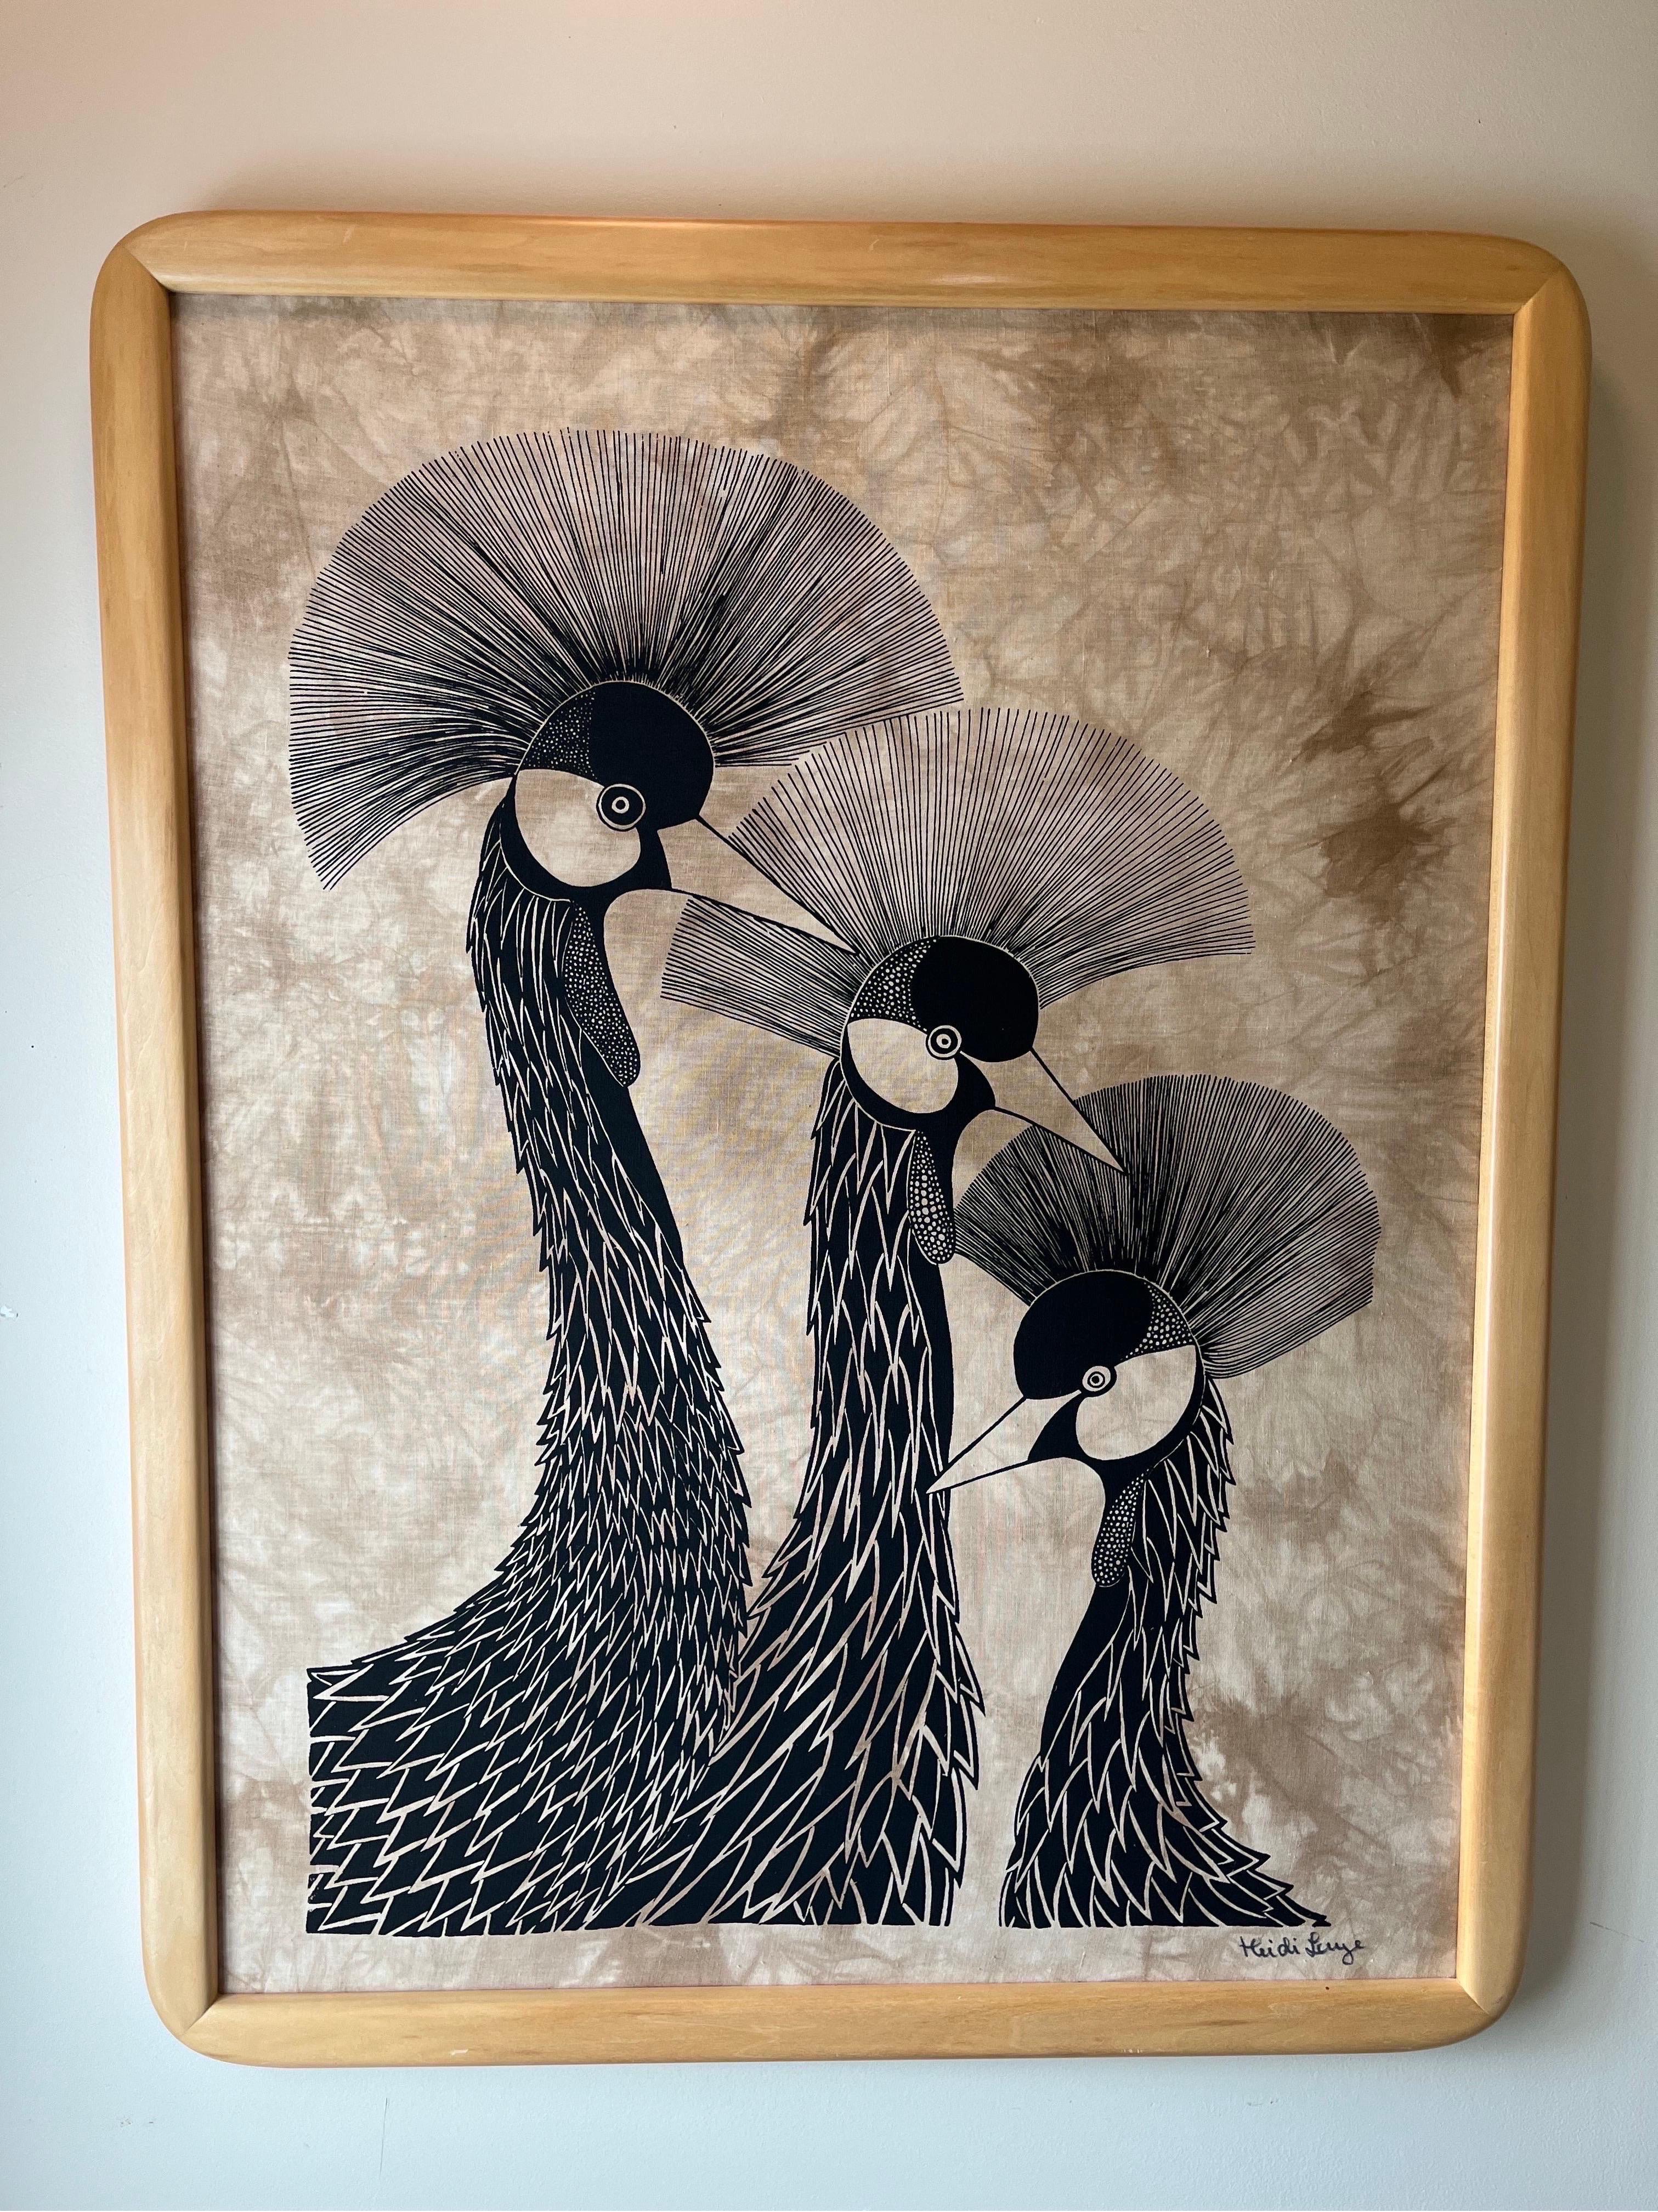 Magnifique Batik représentant  3 grues stylisées en train de s'ébrouer de l'artiste suédoise Heidi Lange. Un visuel et un contraste remarquables.
En bordure de route vers NYC/Philly $350